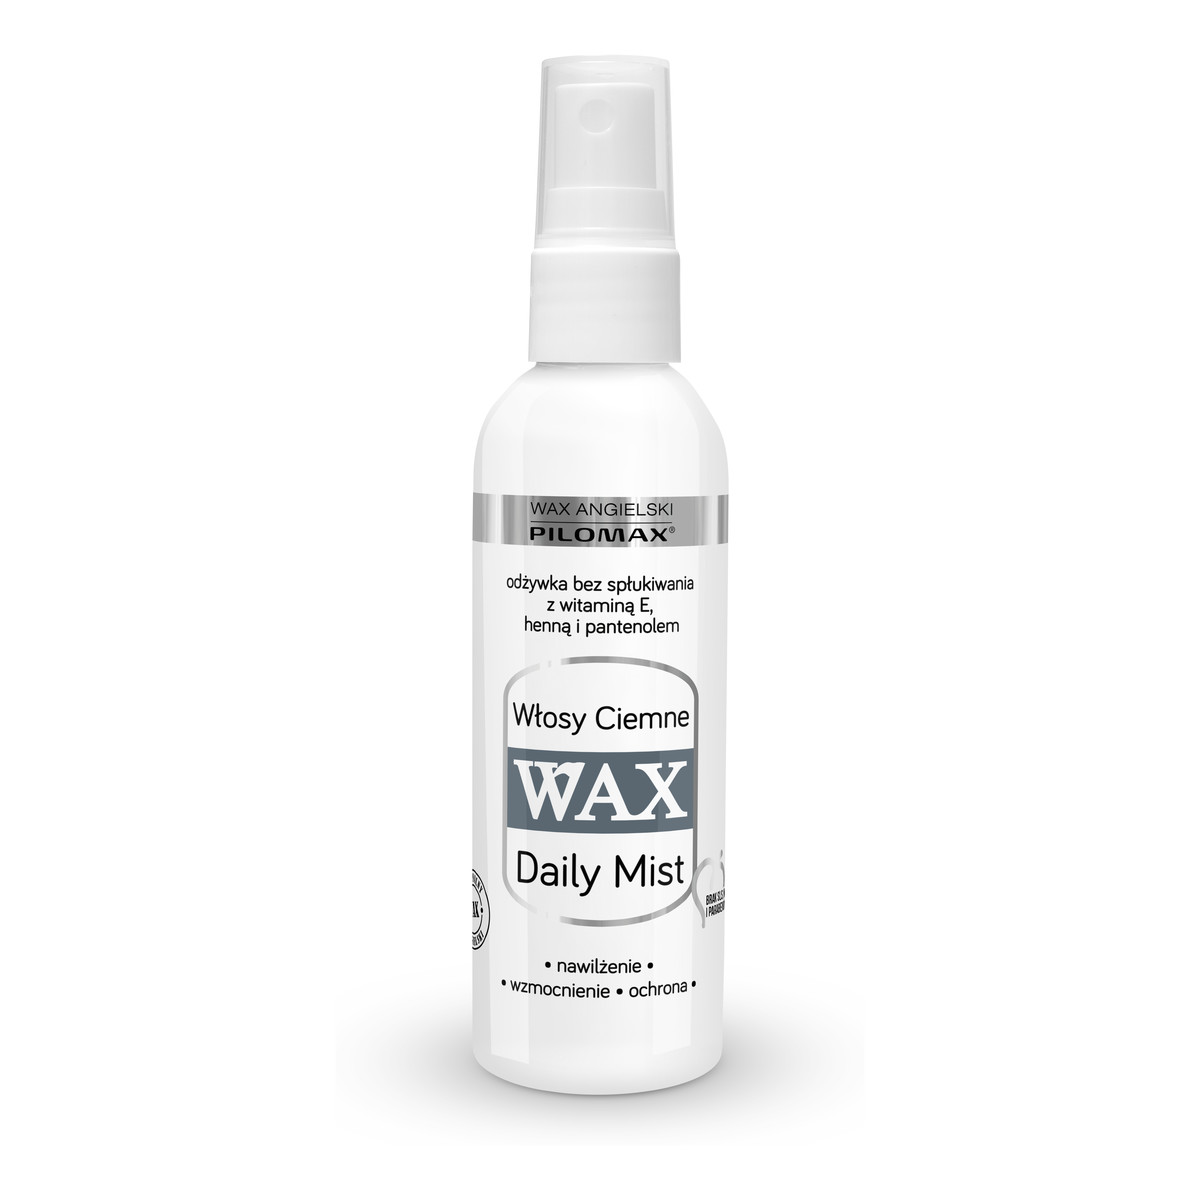 Pilomax Wax Daily Mist Odżywka Bez Spłukiwania Do Włosów Ciemnych 100ml